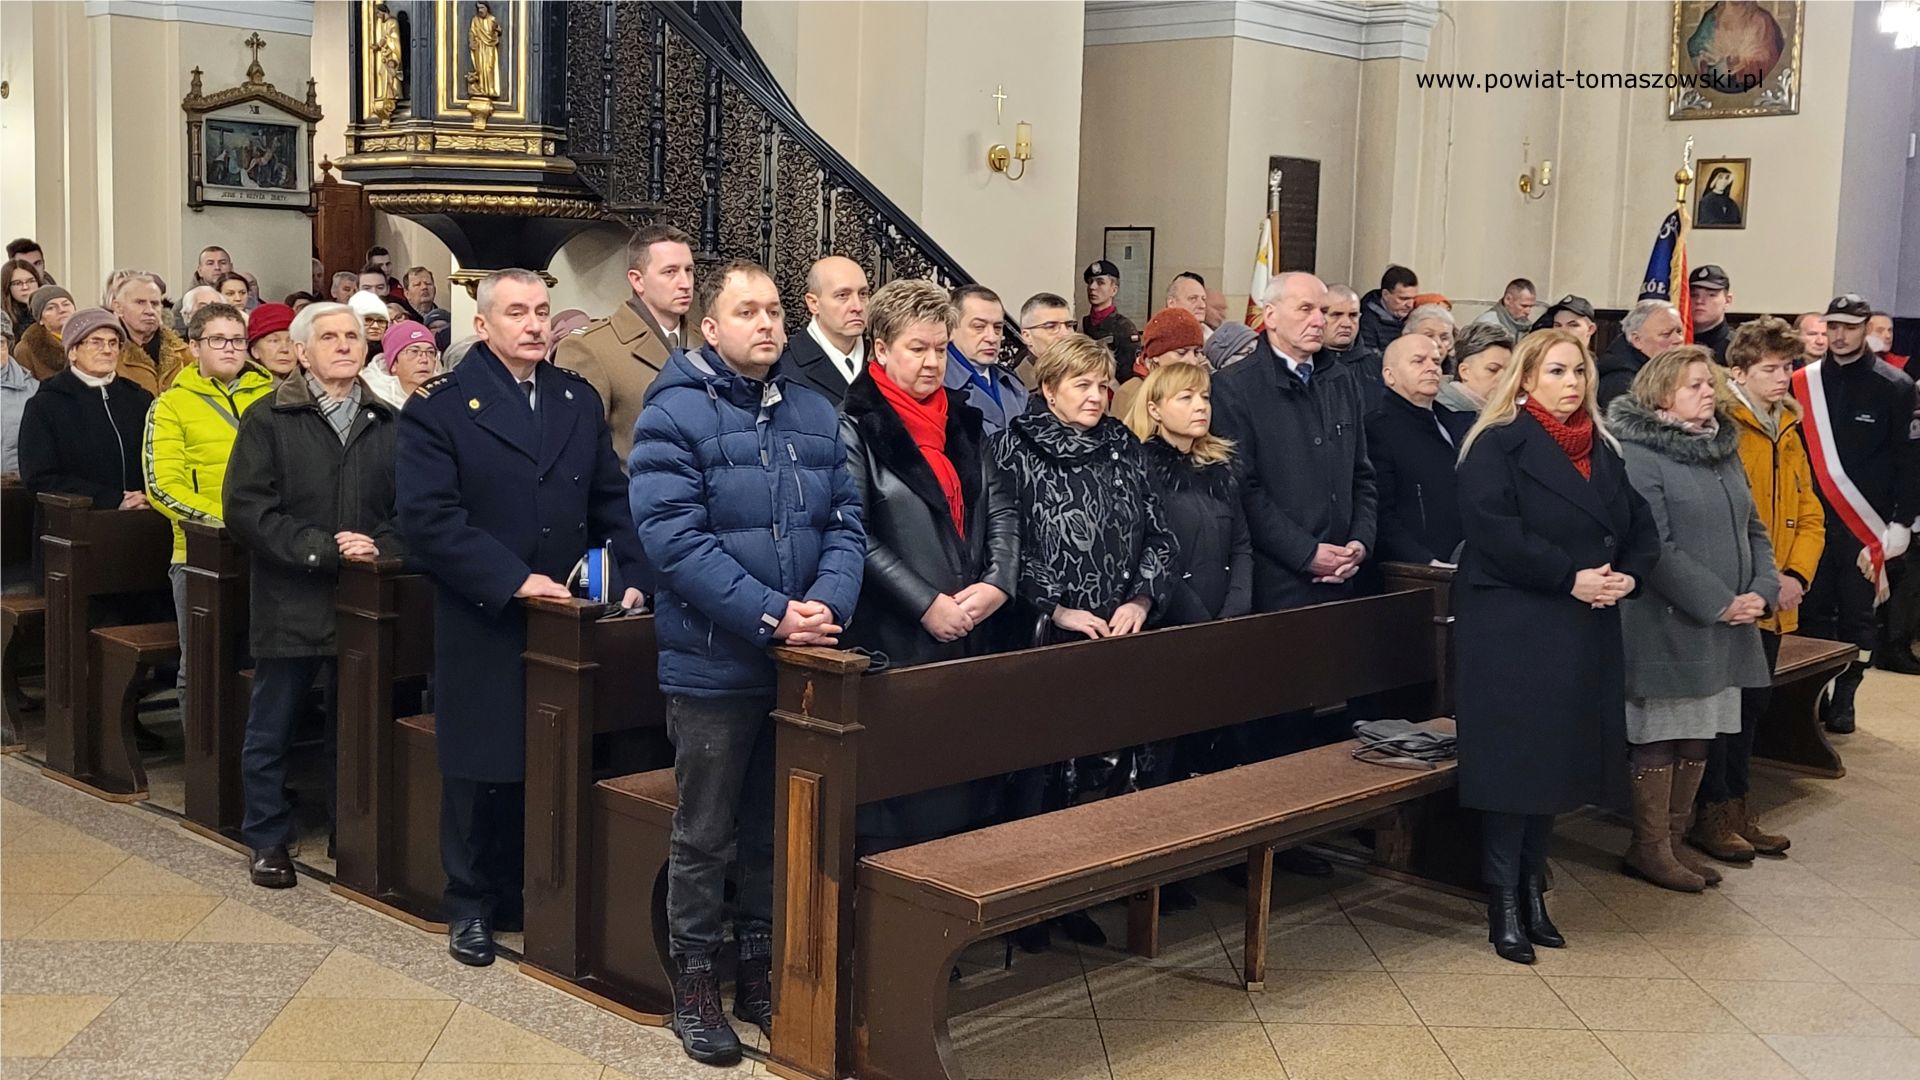 Na zdjęciu: uczestnicy obchodów 160. rocznicy wybuchu powstania styczniowego, które odbyły się w Tomaszowie Mazowieckim, w niedzielę, 22 stycznia 2023 roku, 